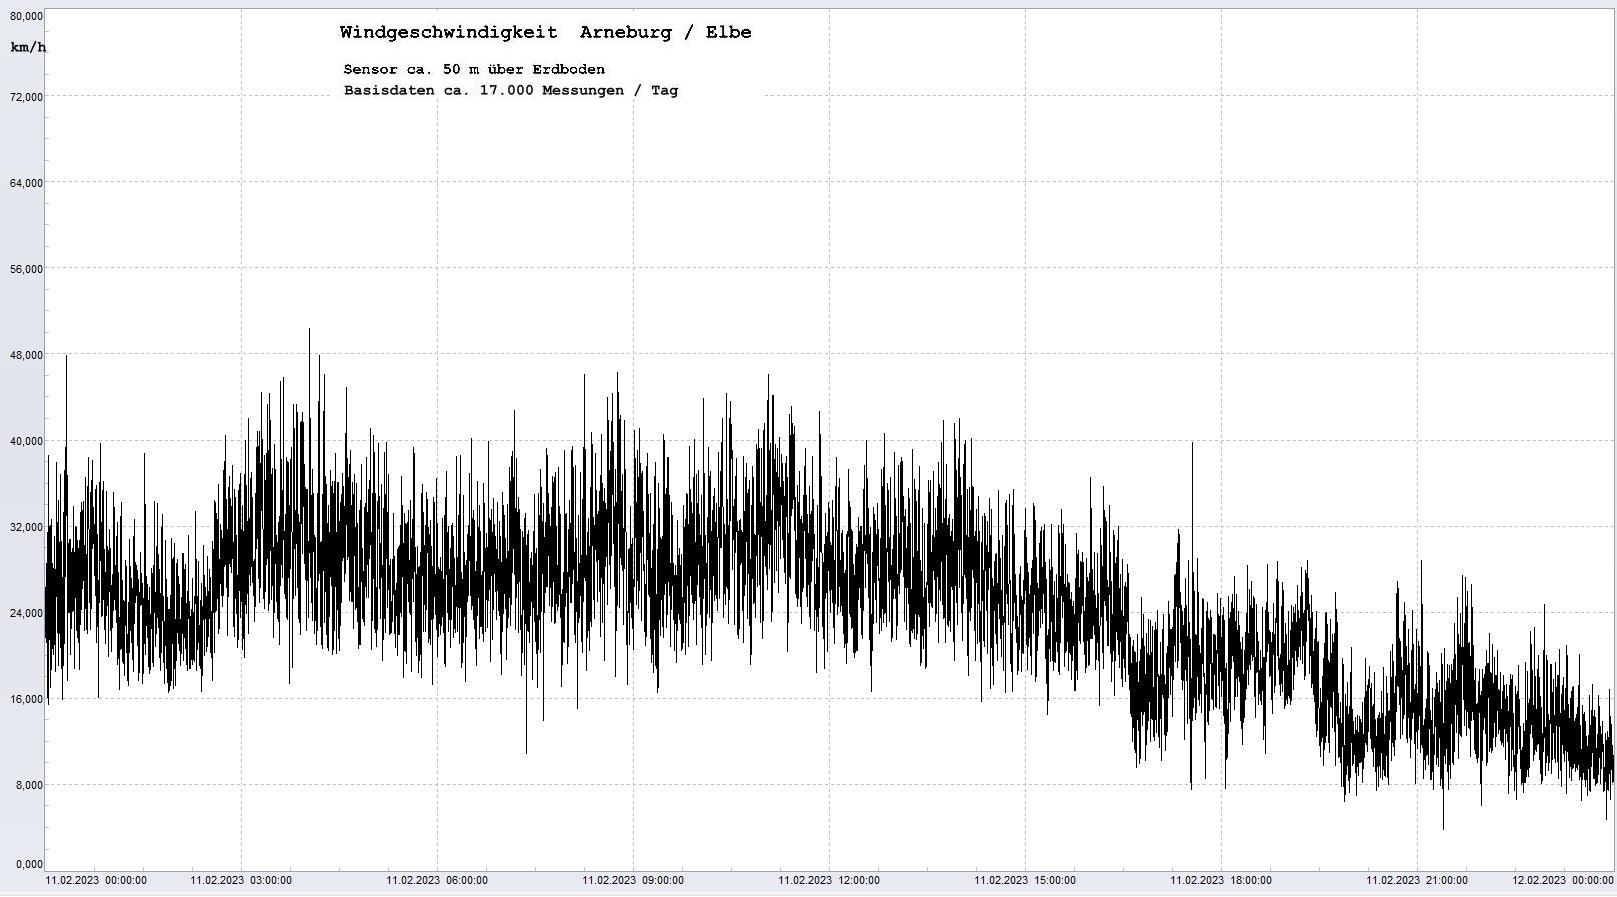 Arneburg Tages-Diagramm Winddaten, 11.02.2023
  Diagramm, Sensor auf Gebäude, ca. 50 m über Erdboden, Basis: 5s-Aufzeichnung